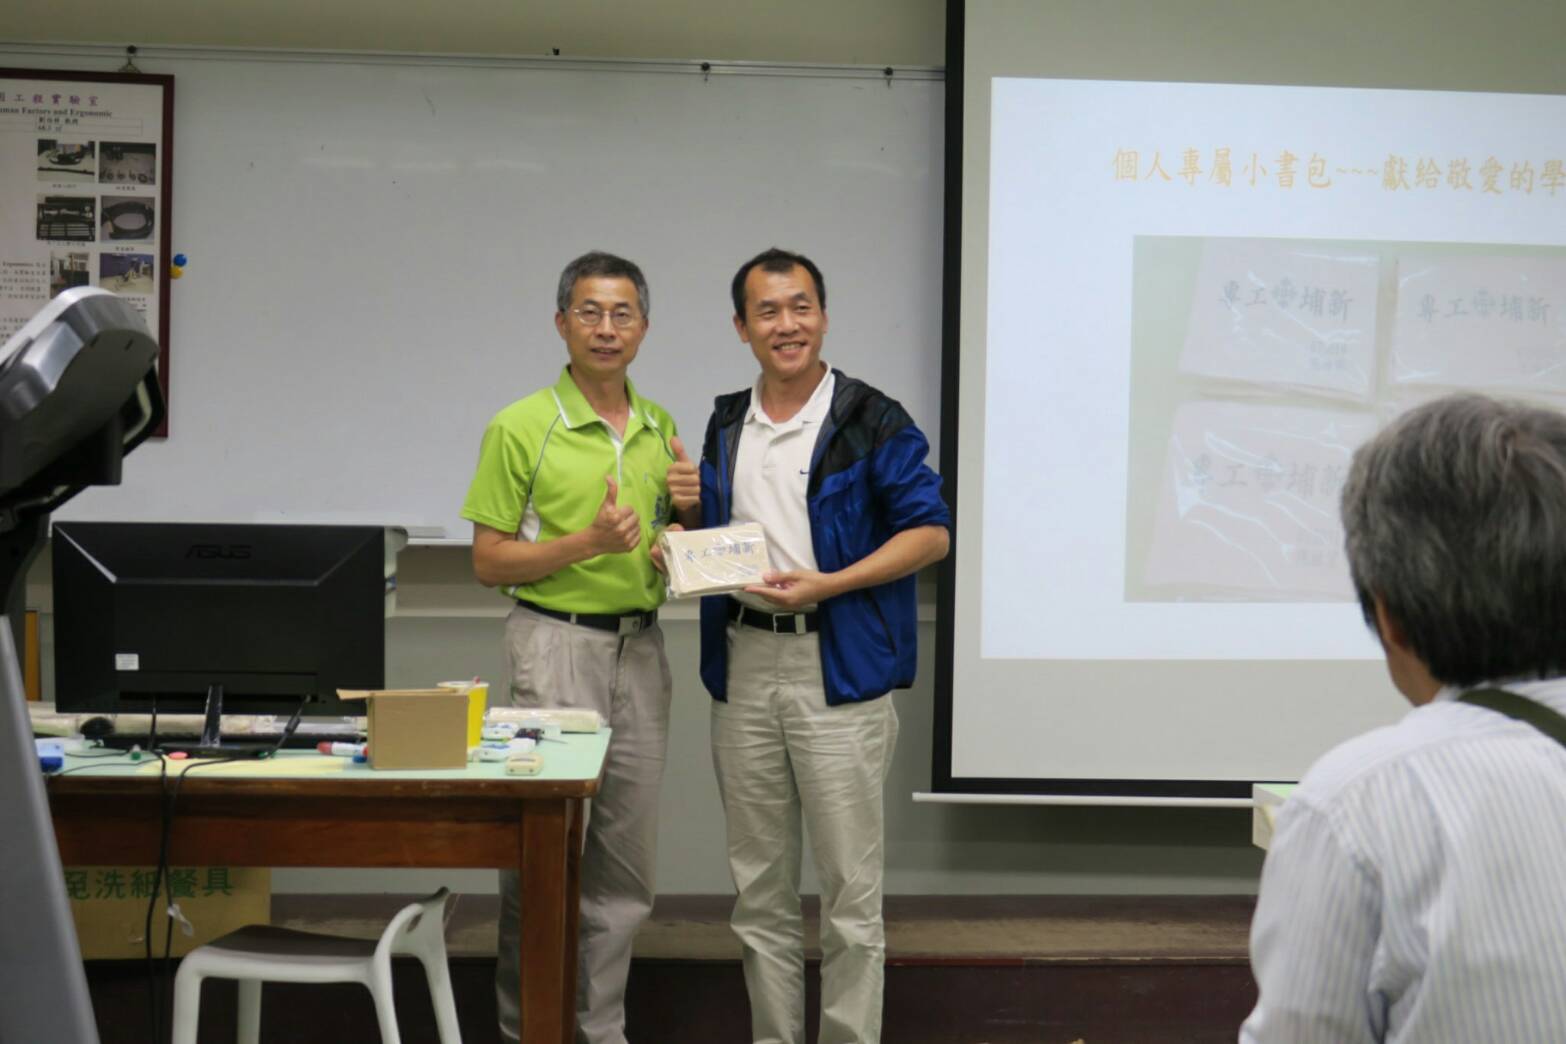 新埔67級機械科畢業校友、校友服務中心主任李再成（左），曾任機械科學會會長，親自前來同學會現場向各位校友表達歡迎之意作模式